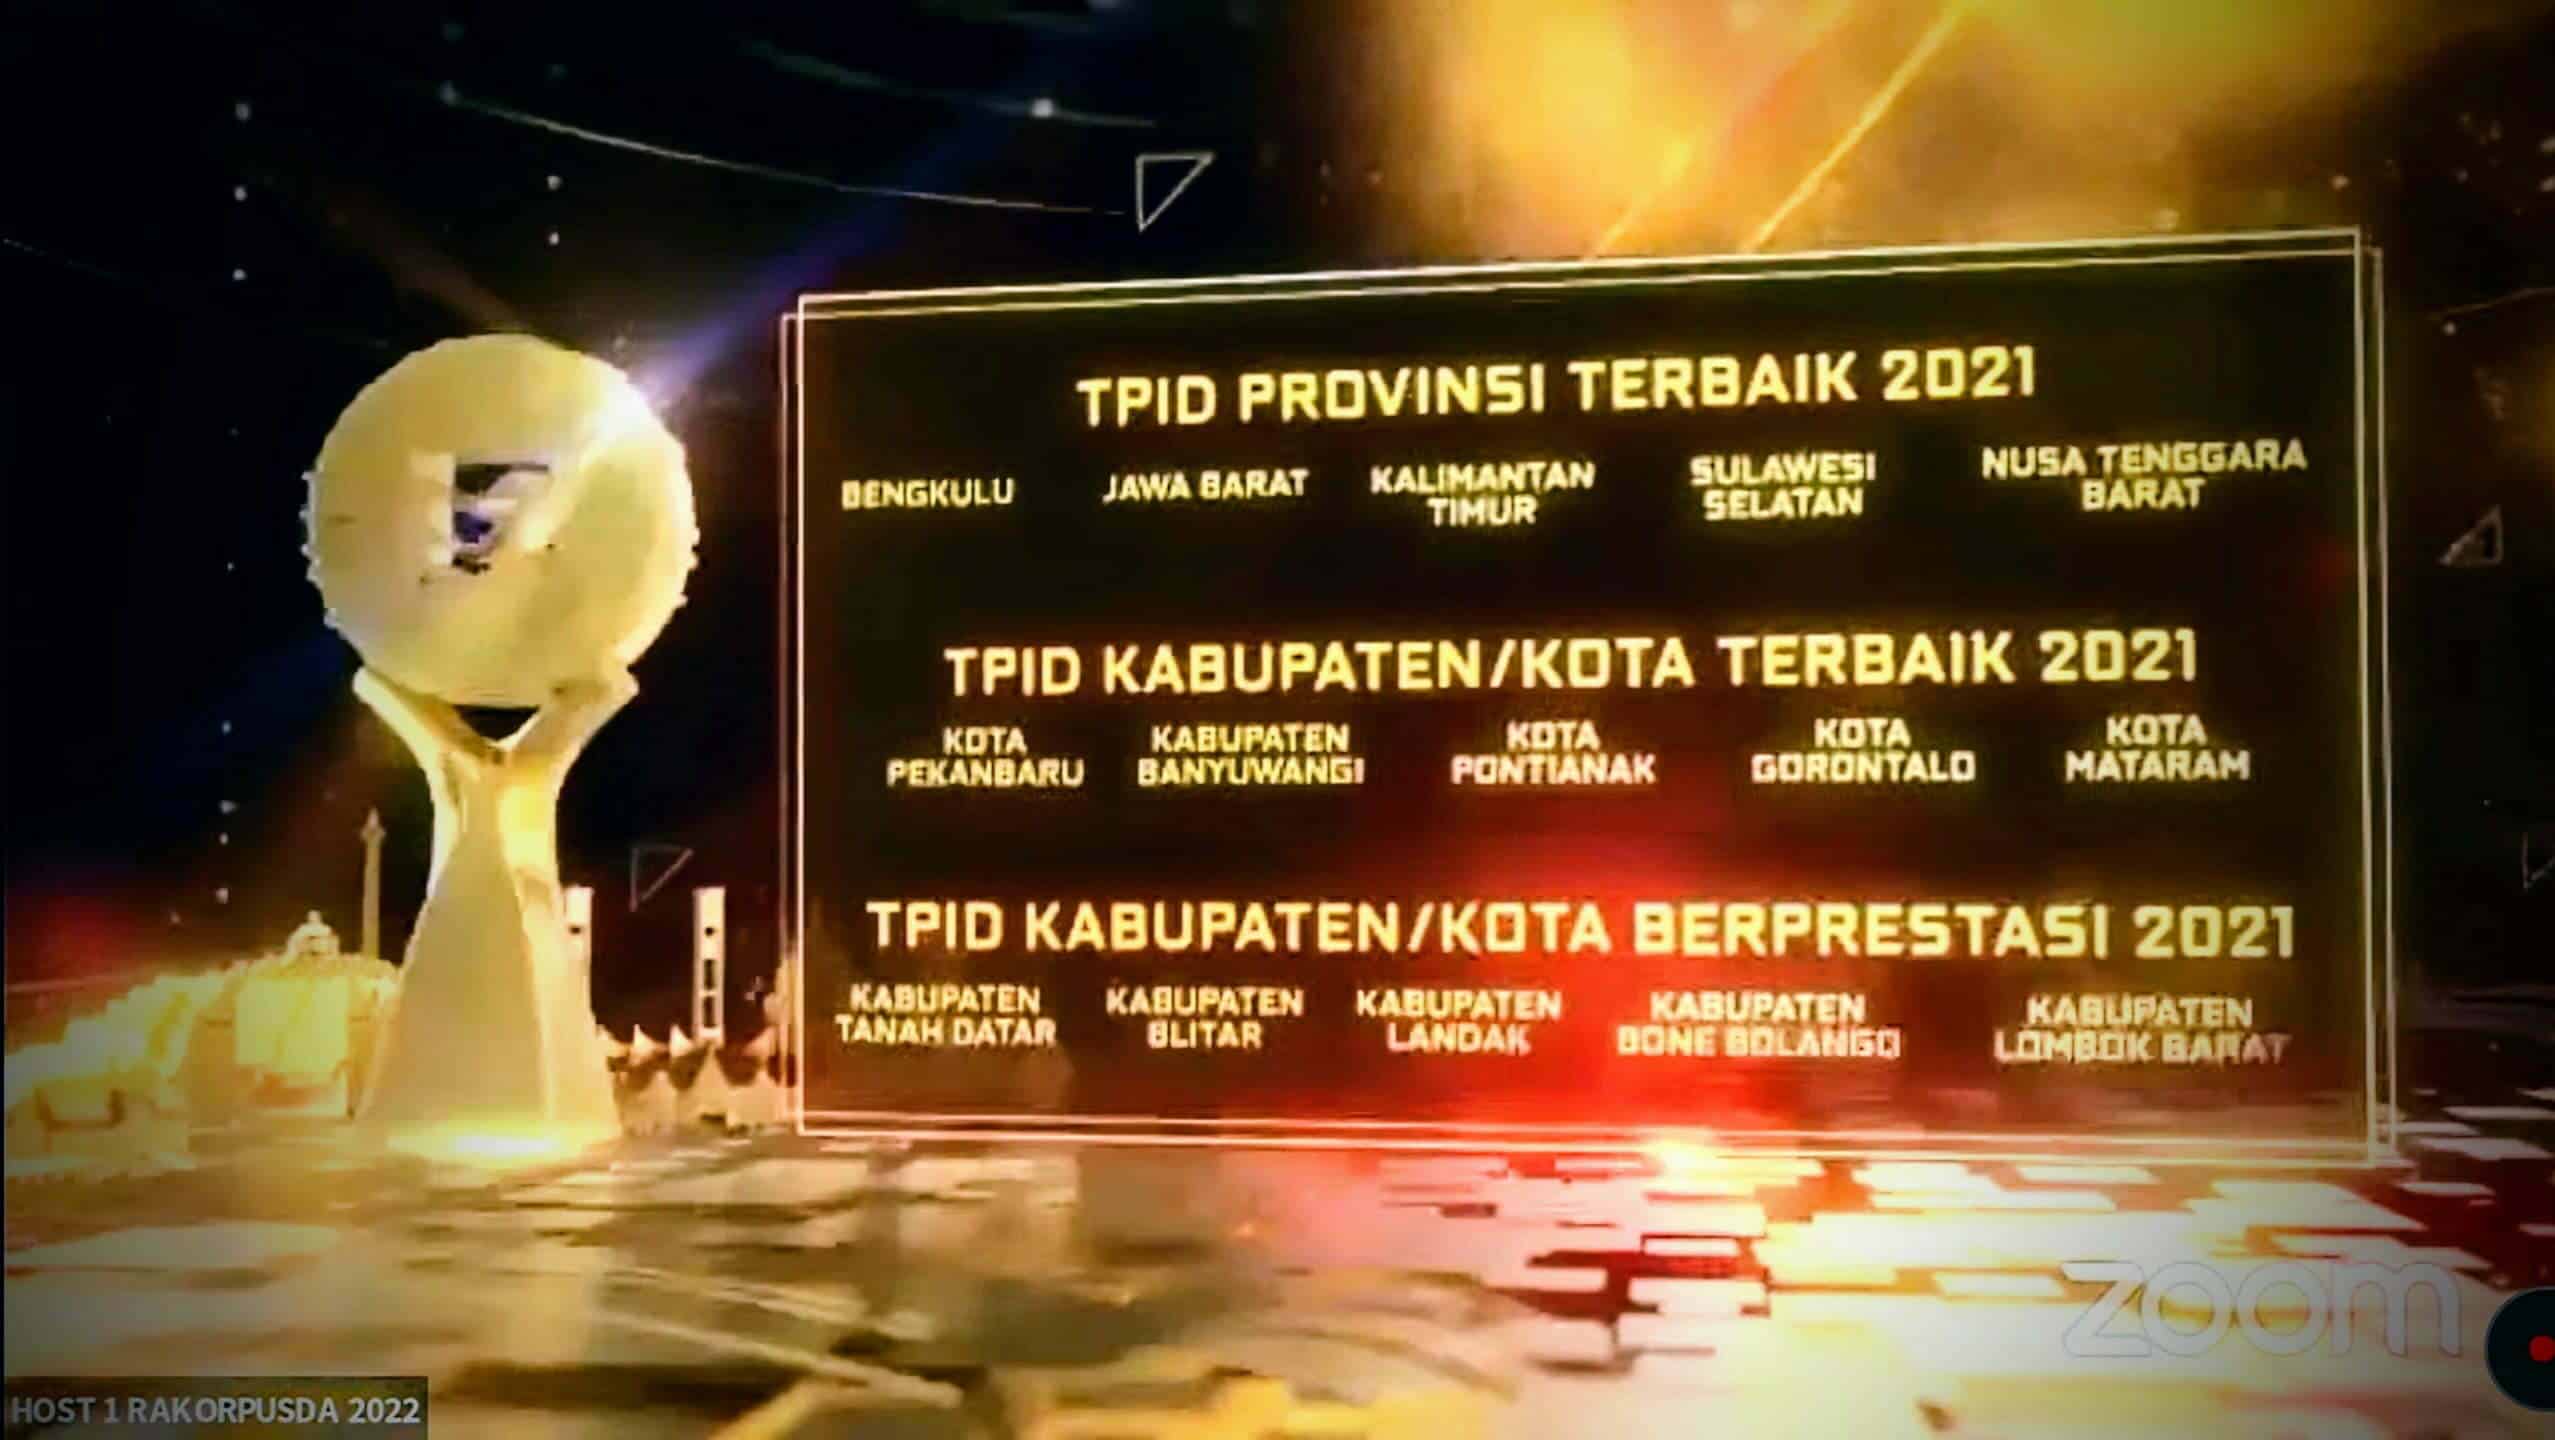 Daftar pemenang TPID Provinsi, Kota dan Kabupaten berkinerja terbaik tahun 2021. (Foto: Biro Adpim for KalbarOnline.com)